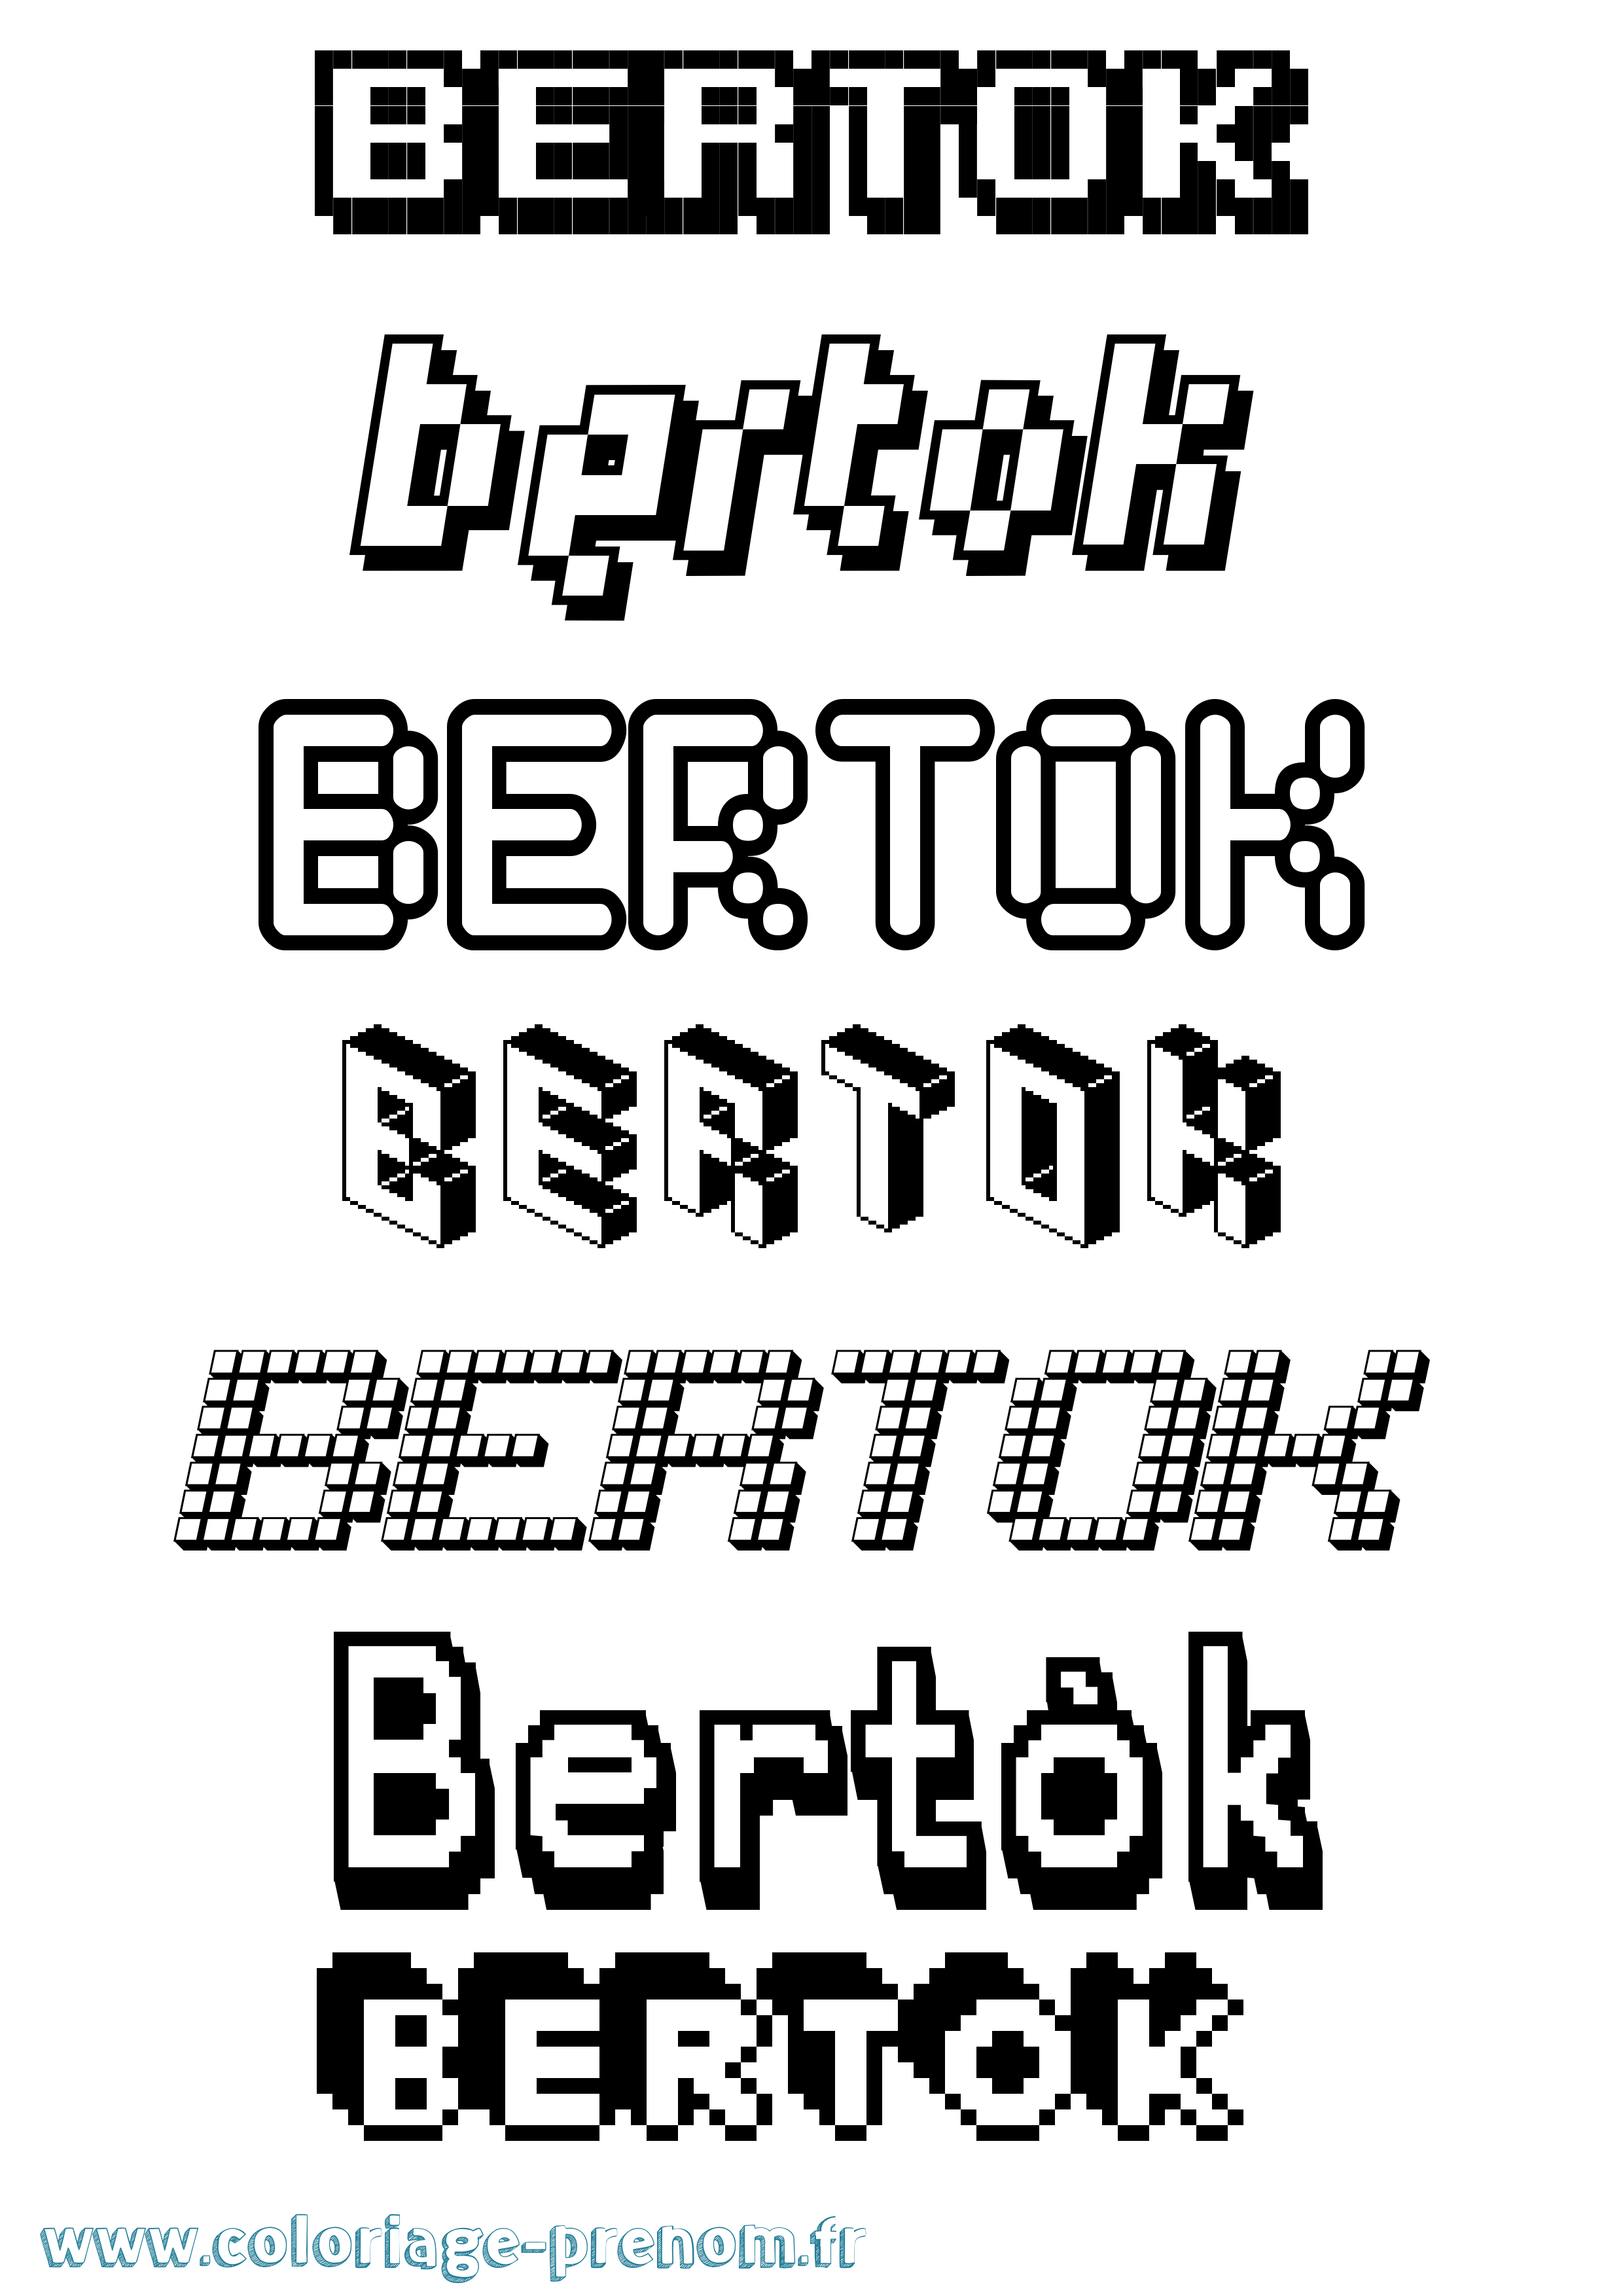 Coloriage prénom Bertók Pixel